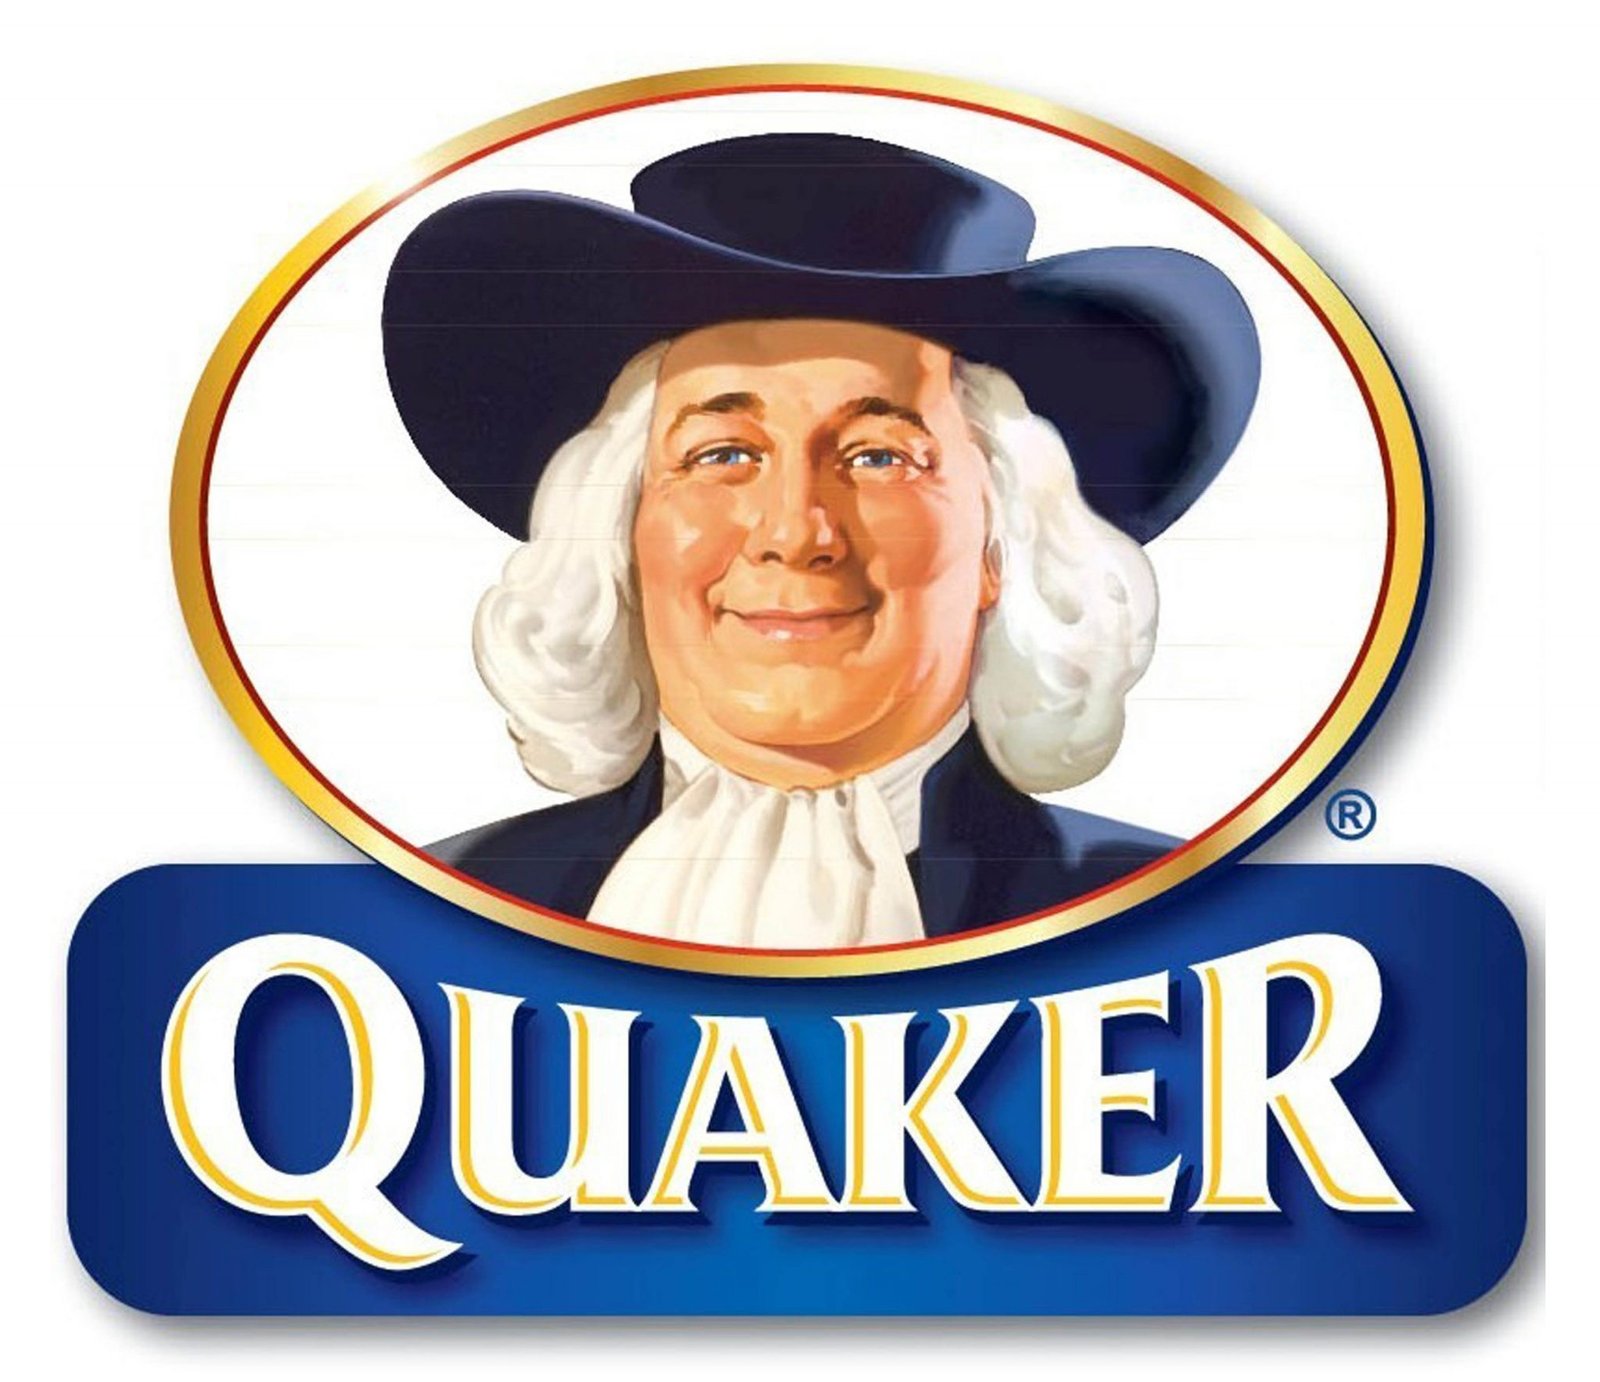 Quaker Oats Company